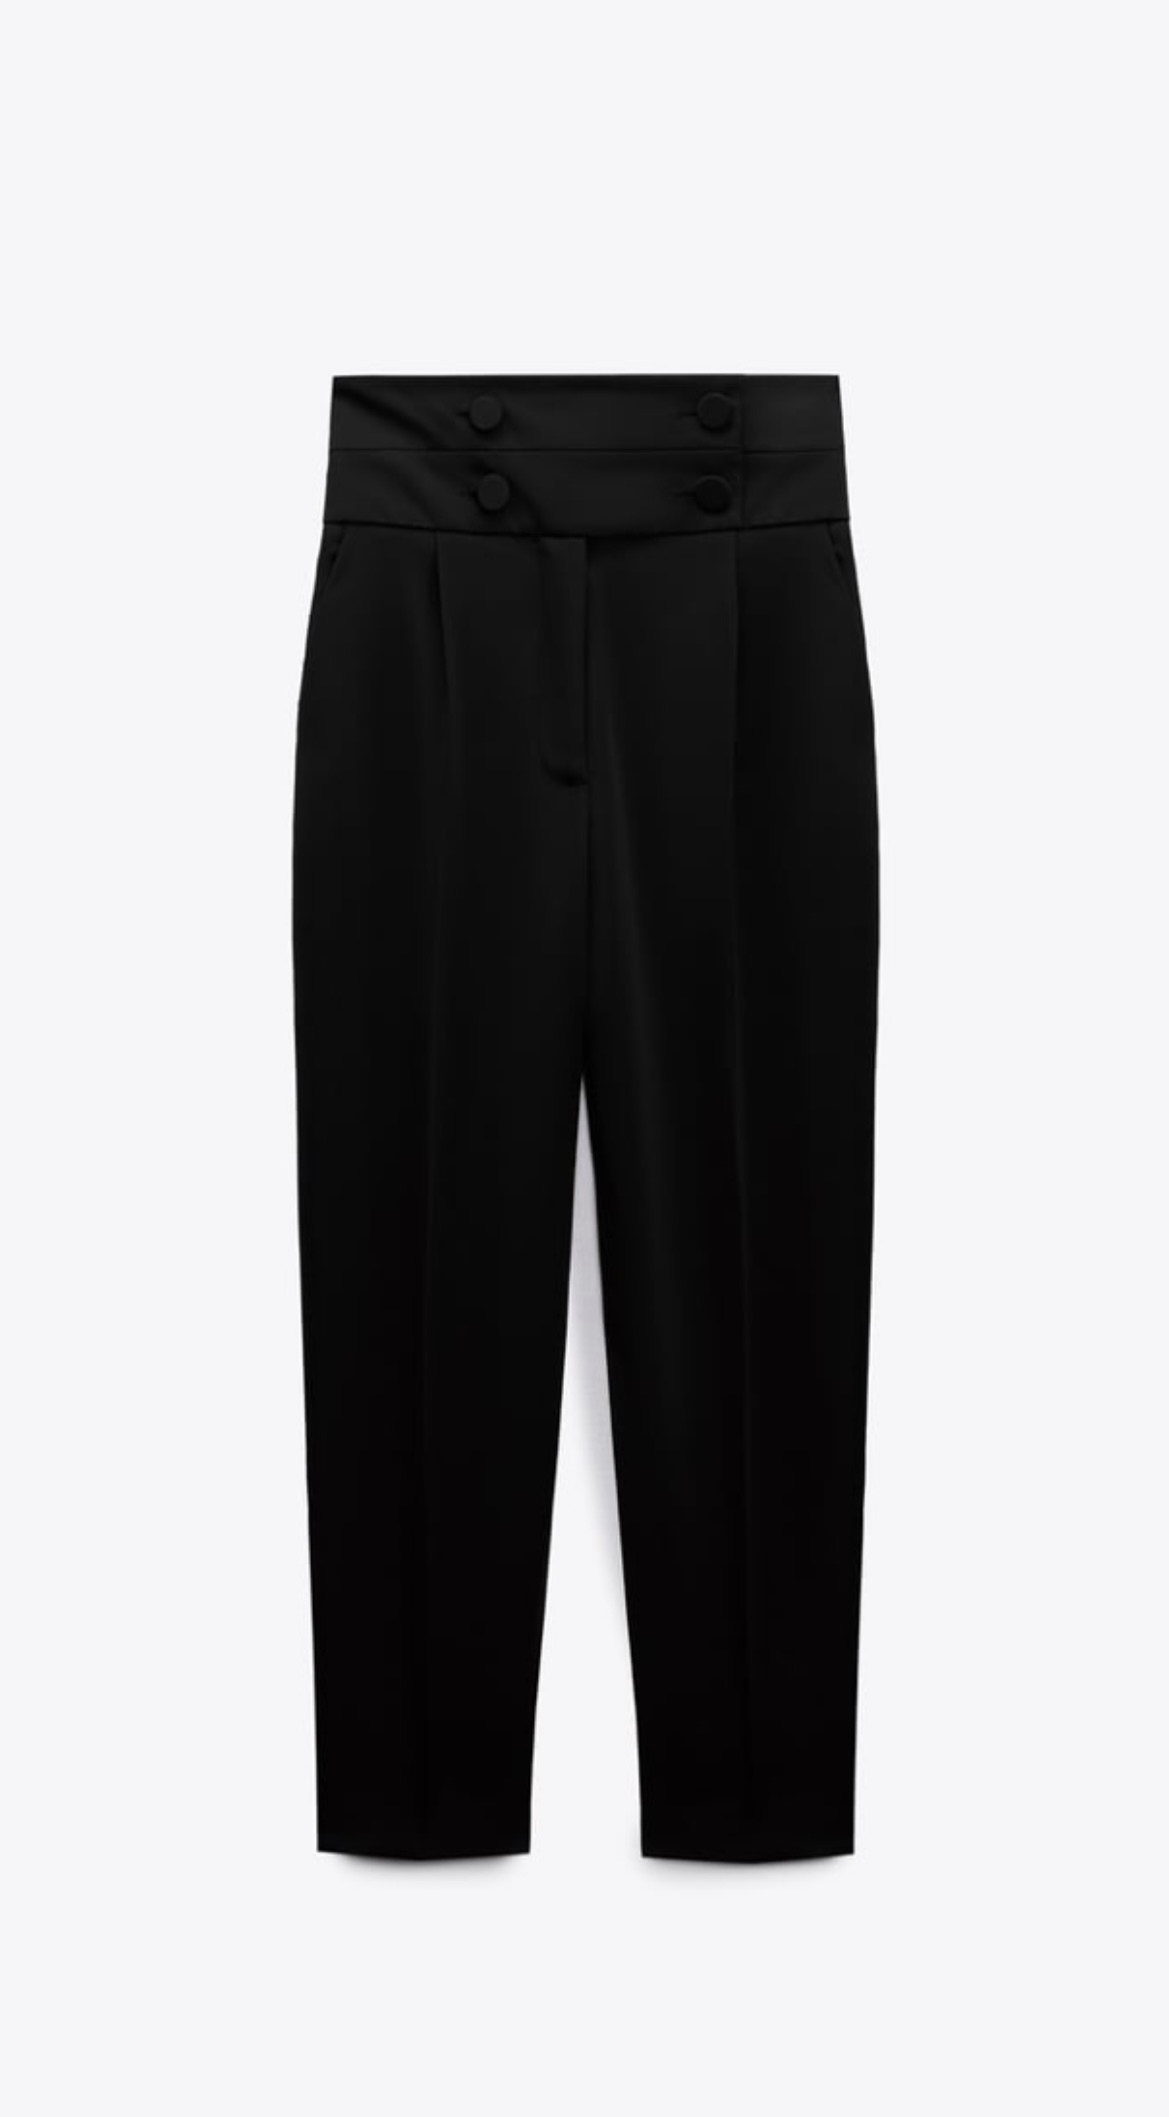 Un pantalón negro de talle alto de Zara.